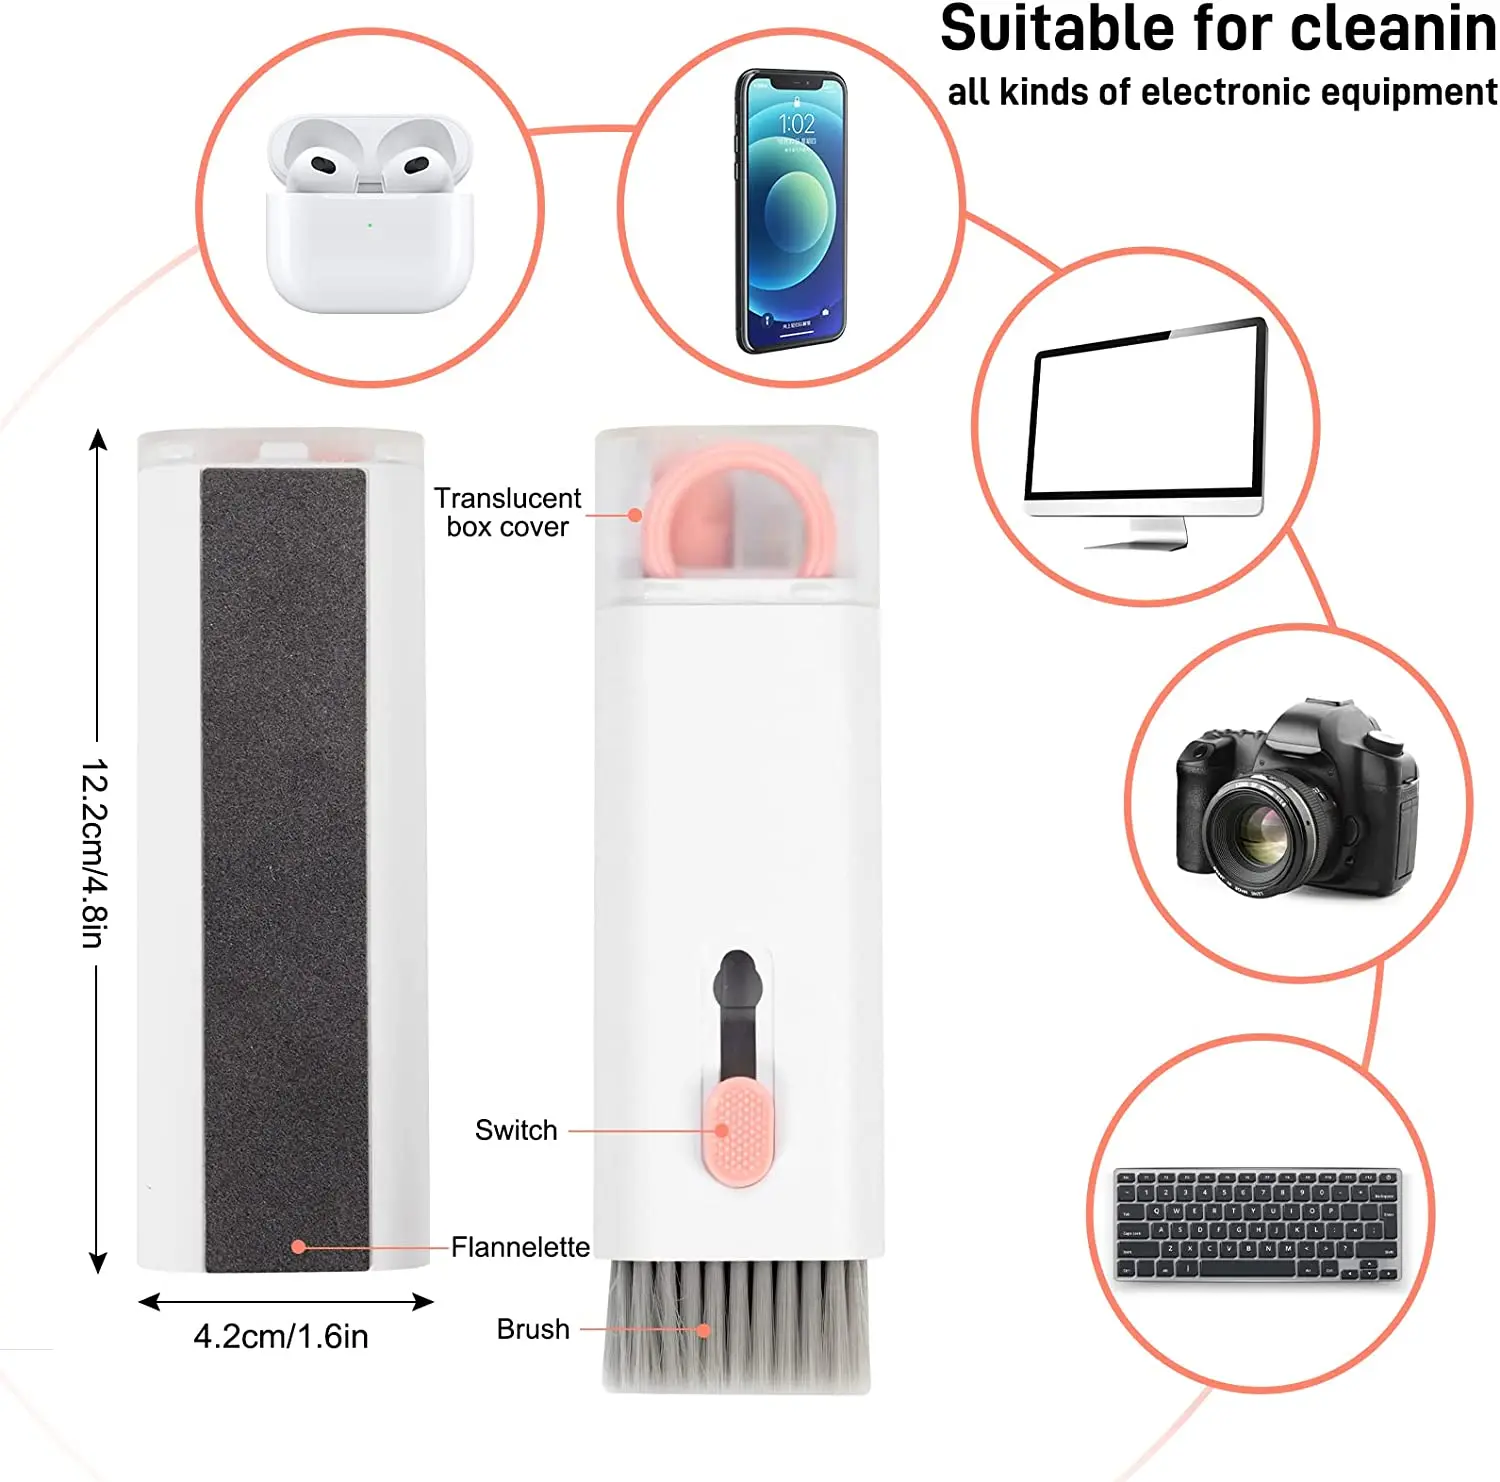 Zestaw 7 w 1 do czyszczenia klawiatury słuchawki do czyszczenia długopisu zestaw wielofunkcyjny zestaw czyszczący do AirPods iPhone iMac MacBook